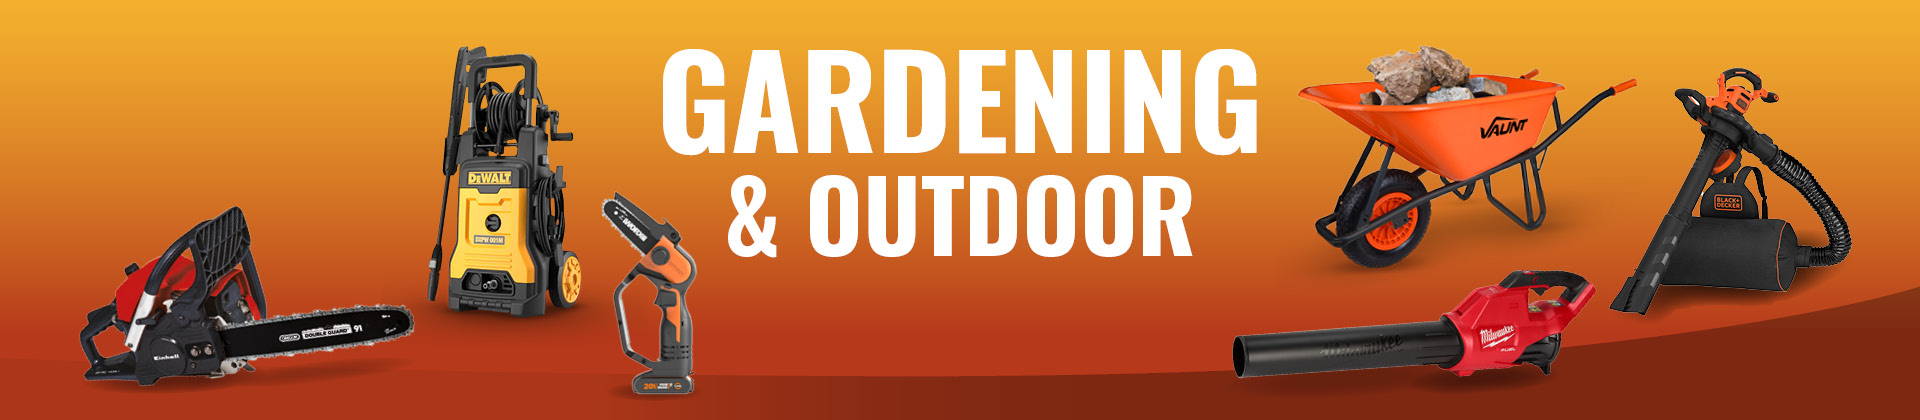 Gardening & Outdoor